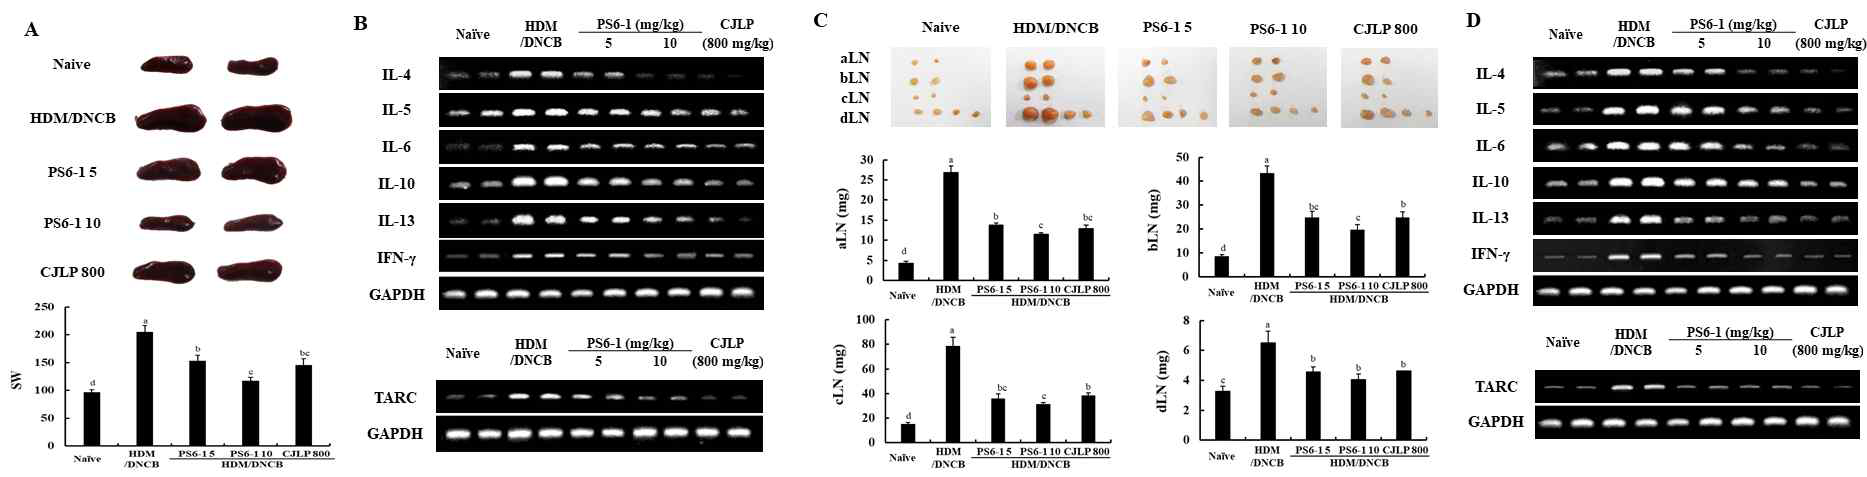 아토피 피부염 동물모델의 비장 및 림프절 내 사이토카인(IL-4, IL-6, IL-10, IL-13 또는 TNF-alpha)의 mRNA 발현량에 대한 PS6-1의 영향 확인